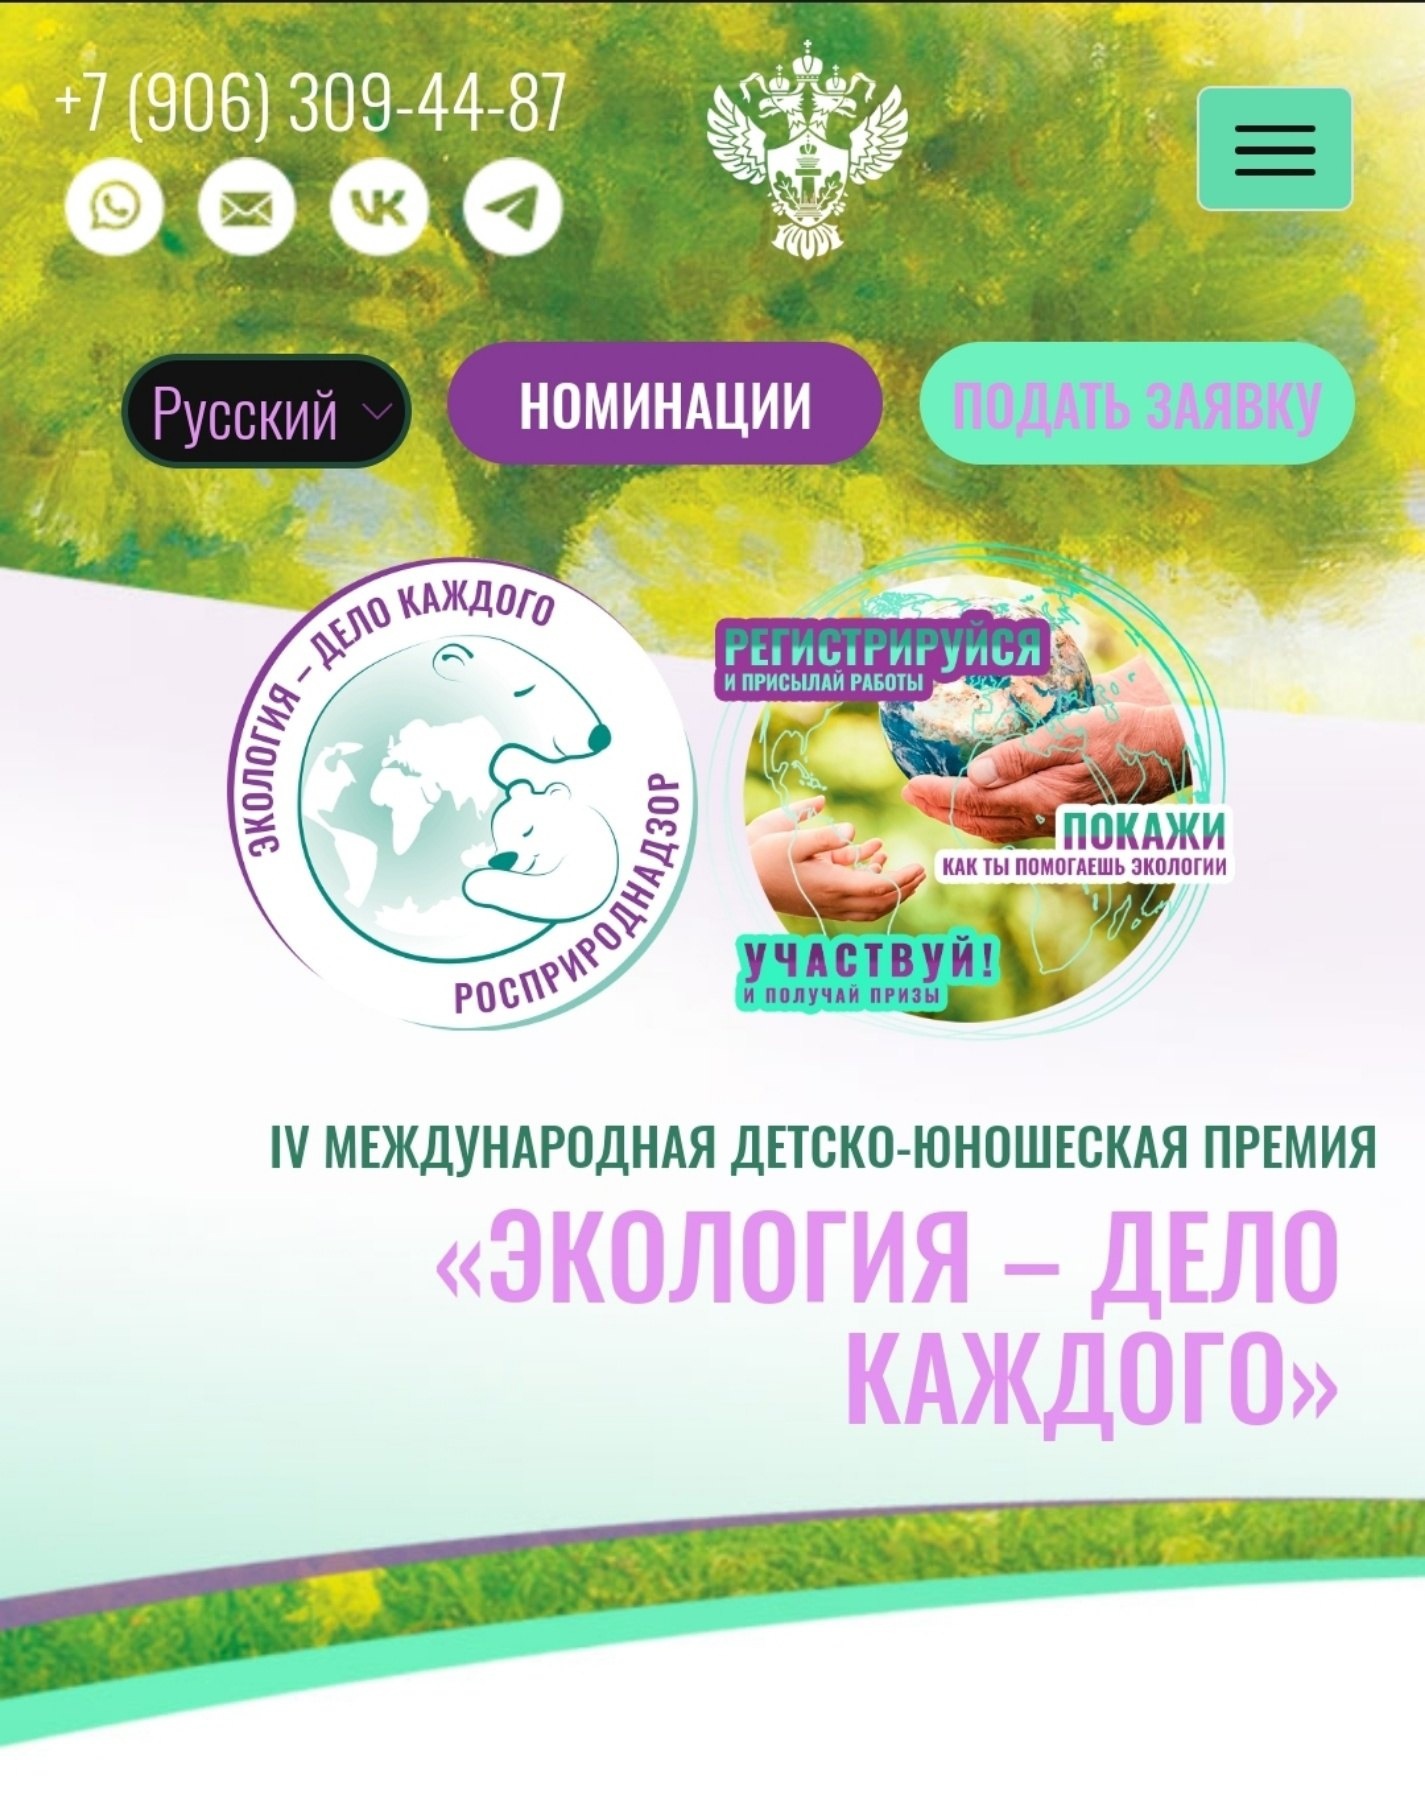 IV Международная детско-юношеская премия «Экология – дело каждого».